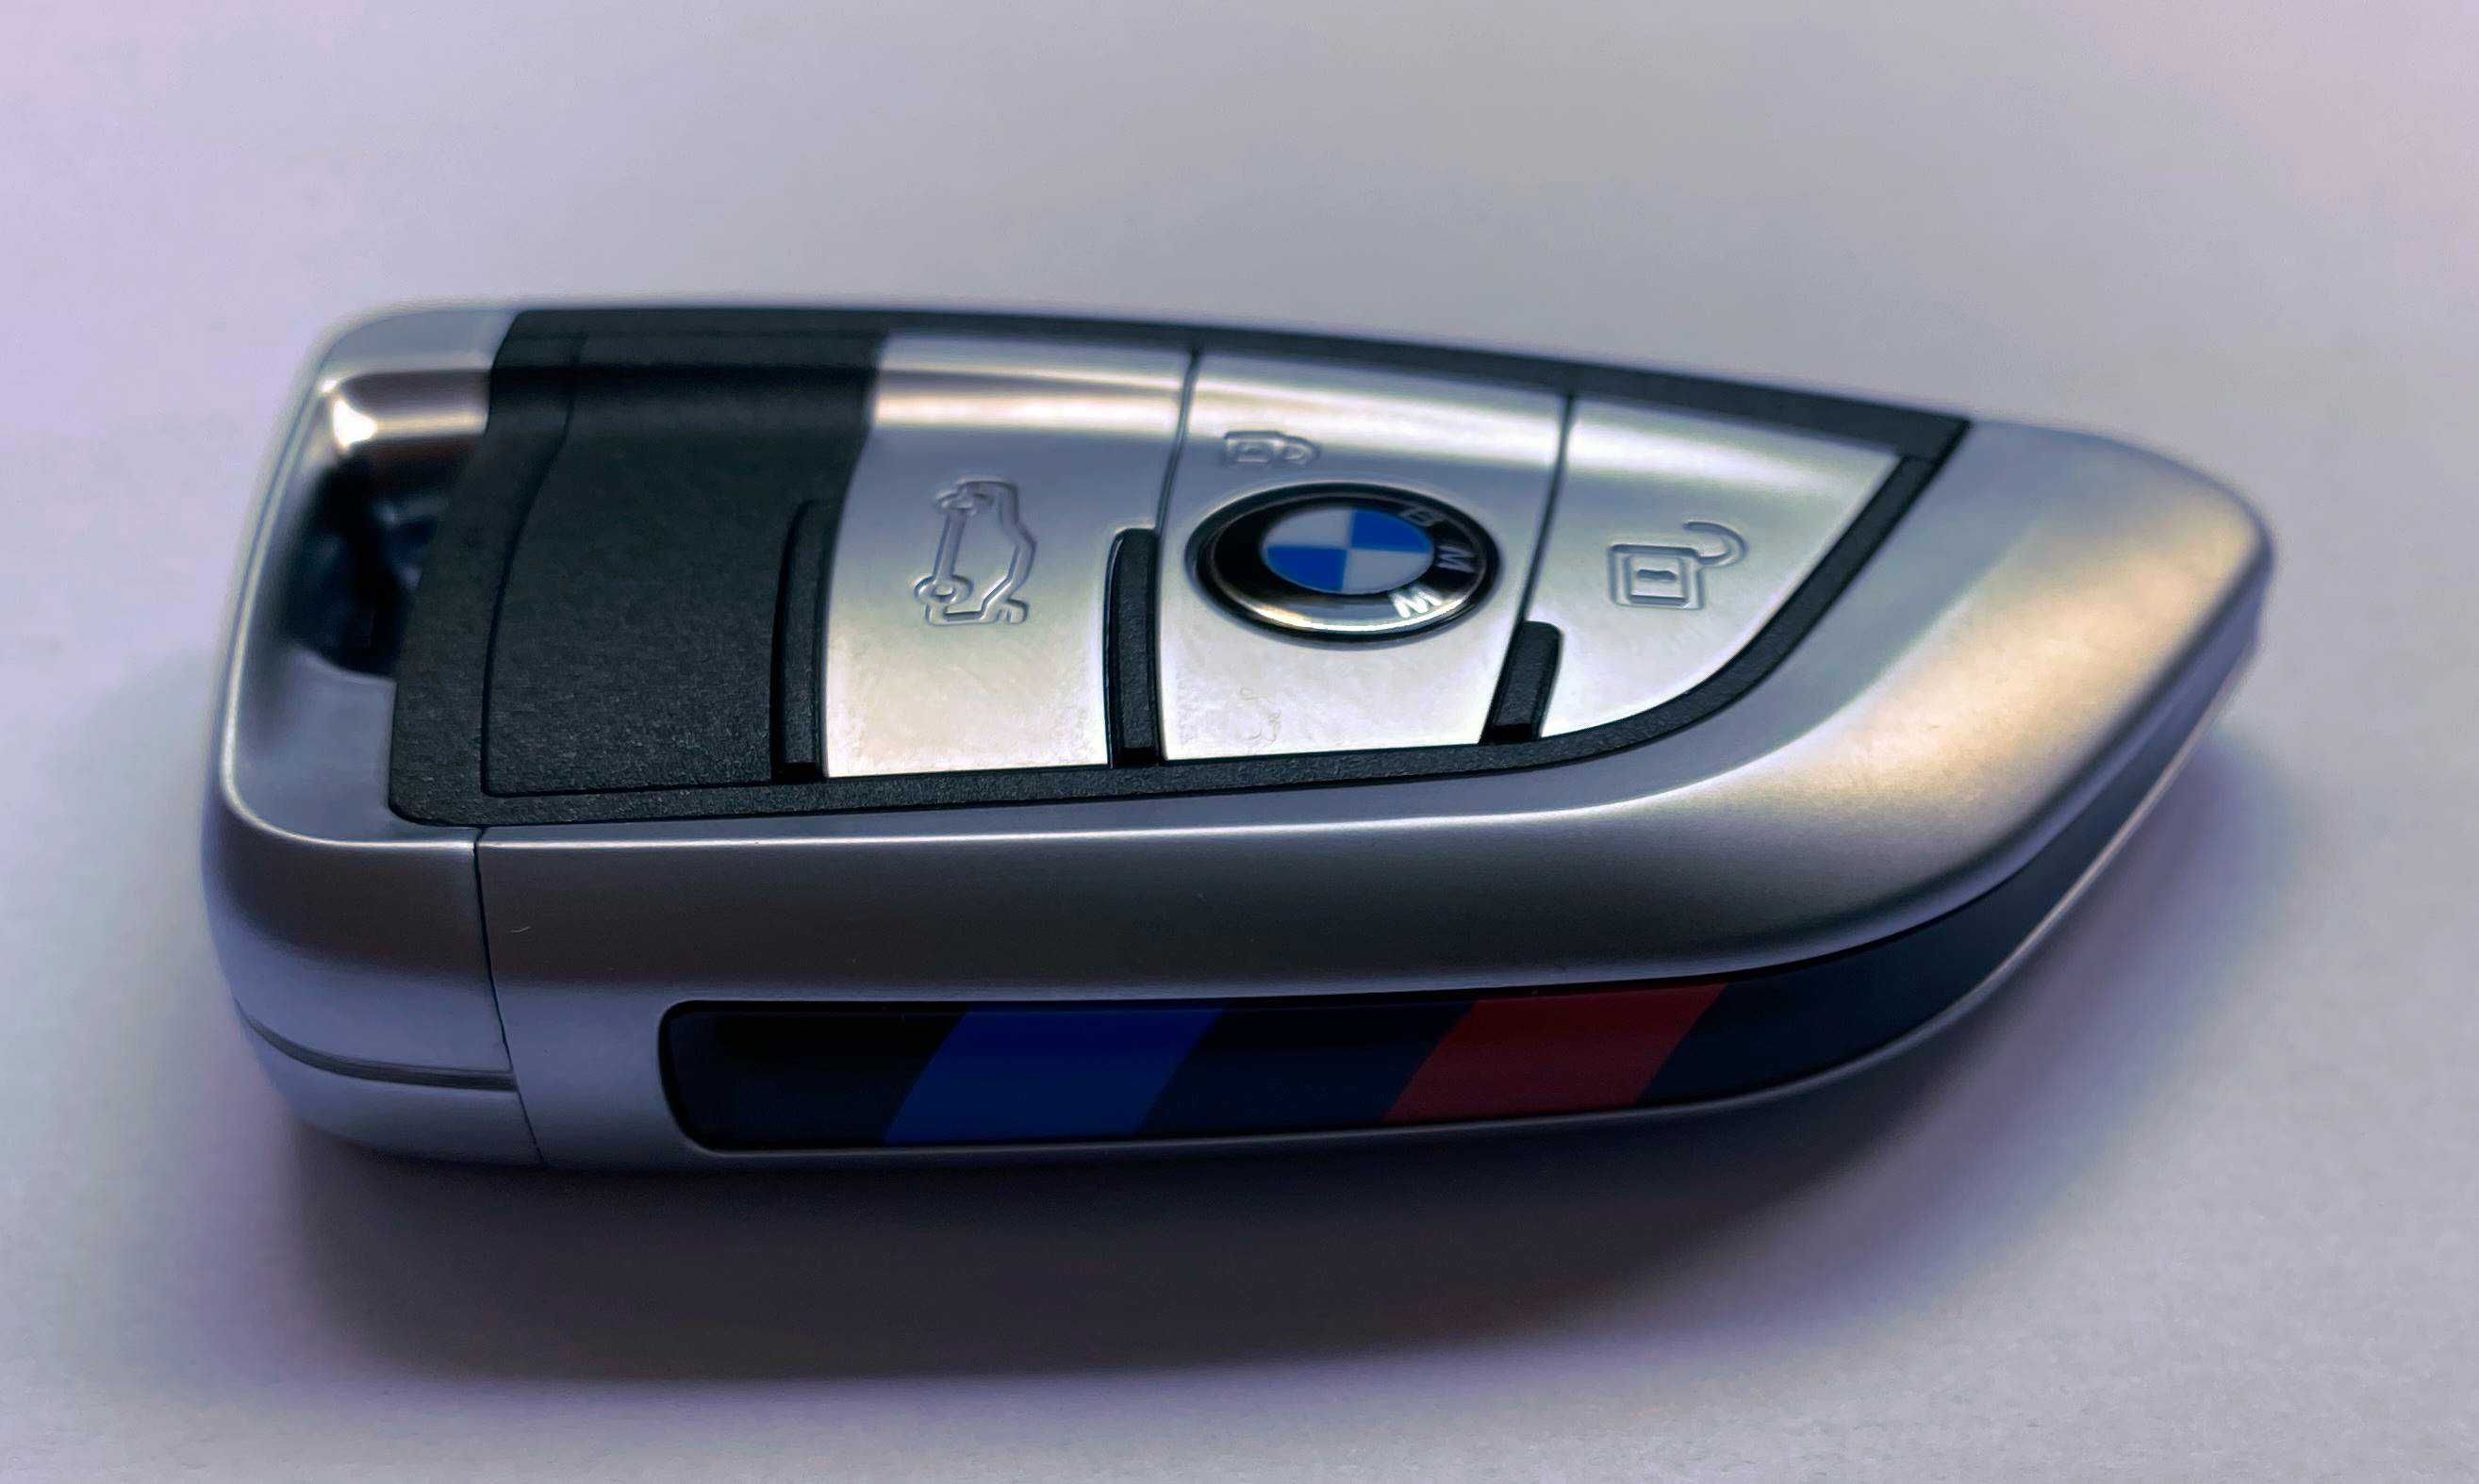 Upgrade cheie BMW E90 E60 X5 E70 X6 E71 E72 Cas3 868 MHZ Keyless-Go